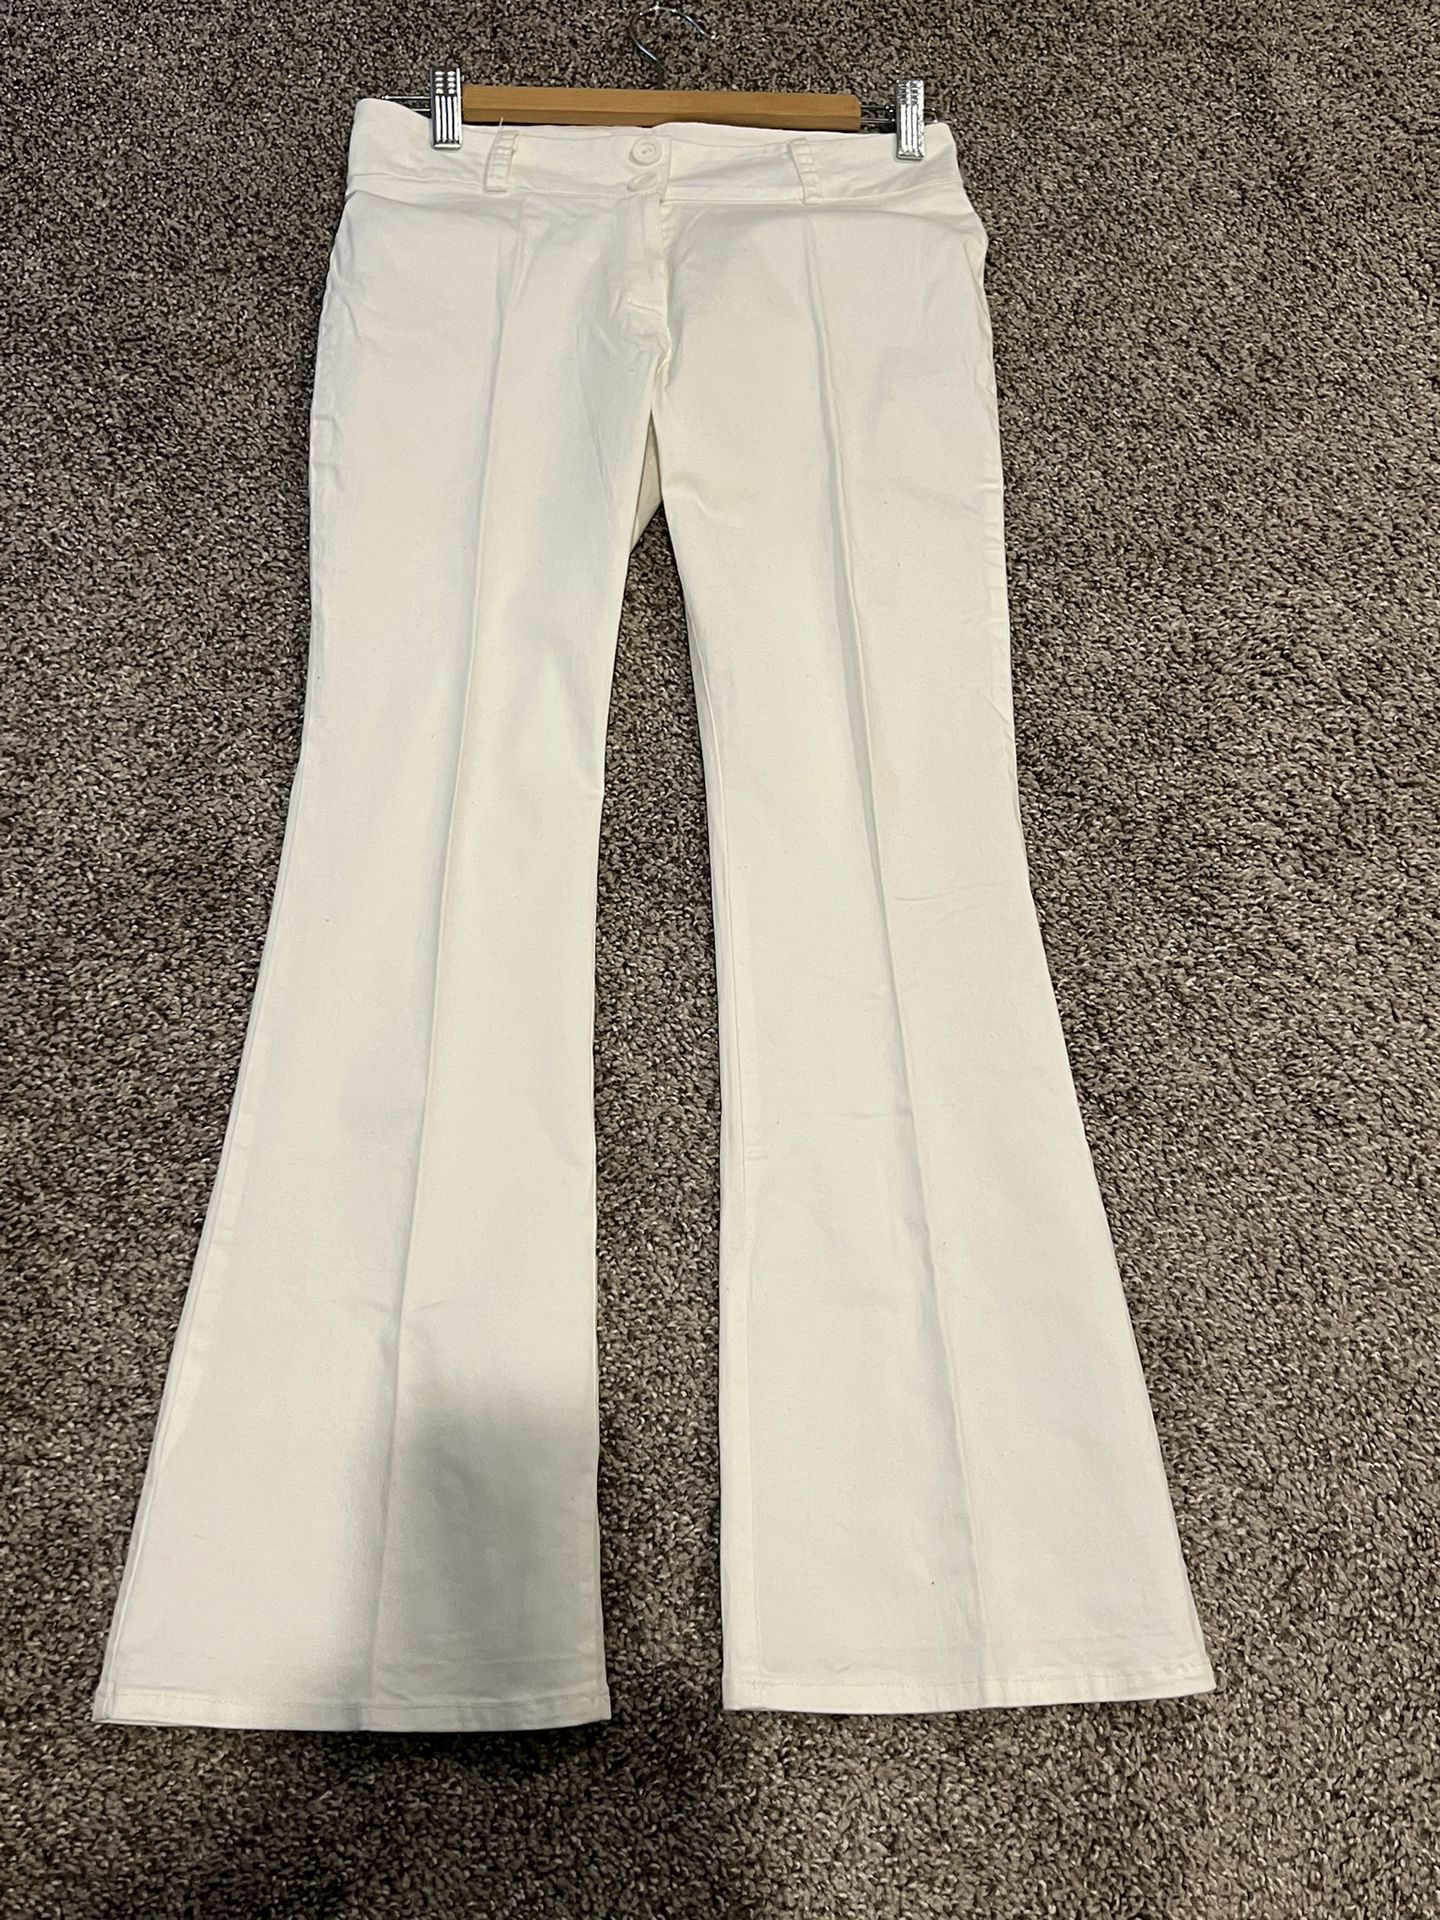 Fairweather White Pants